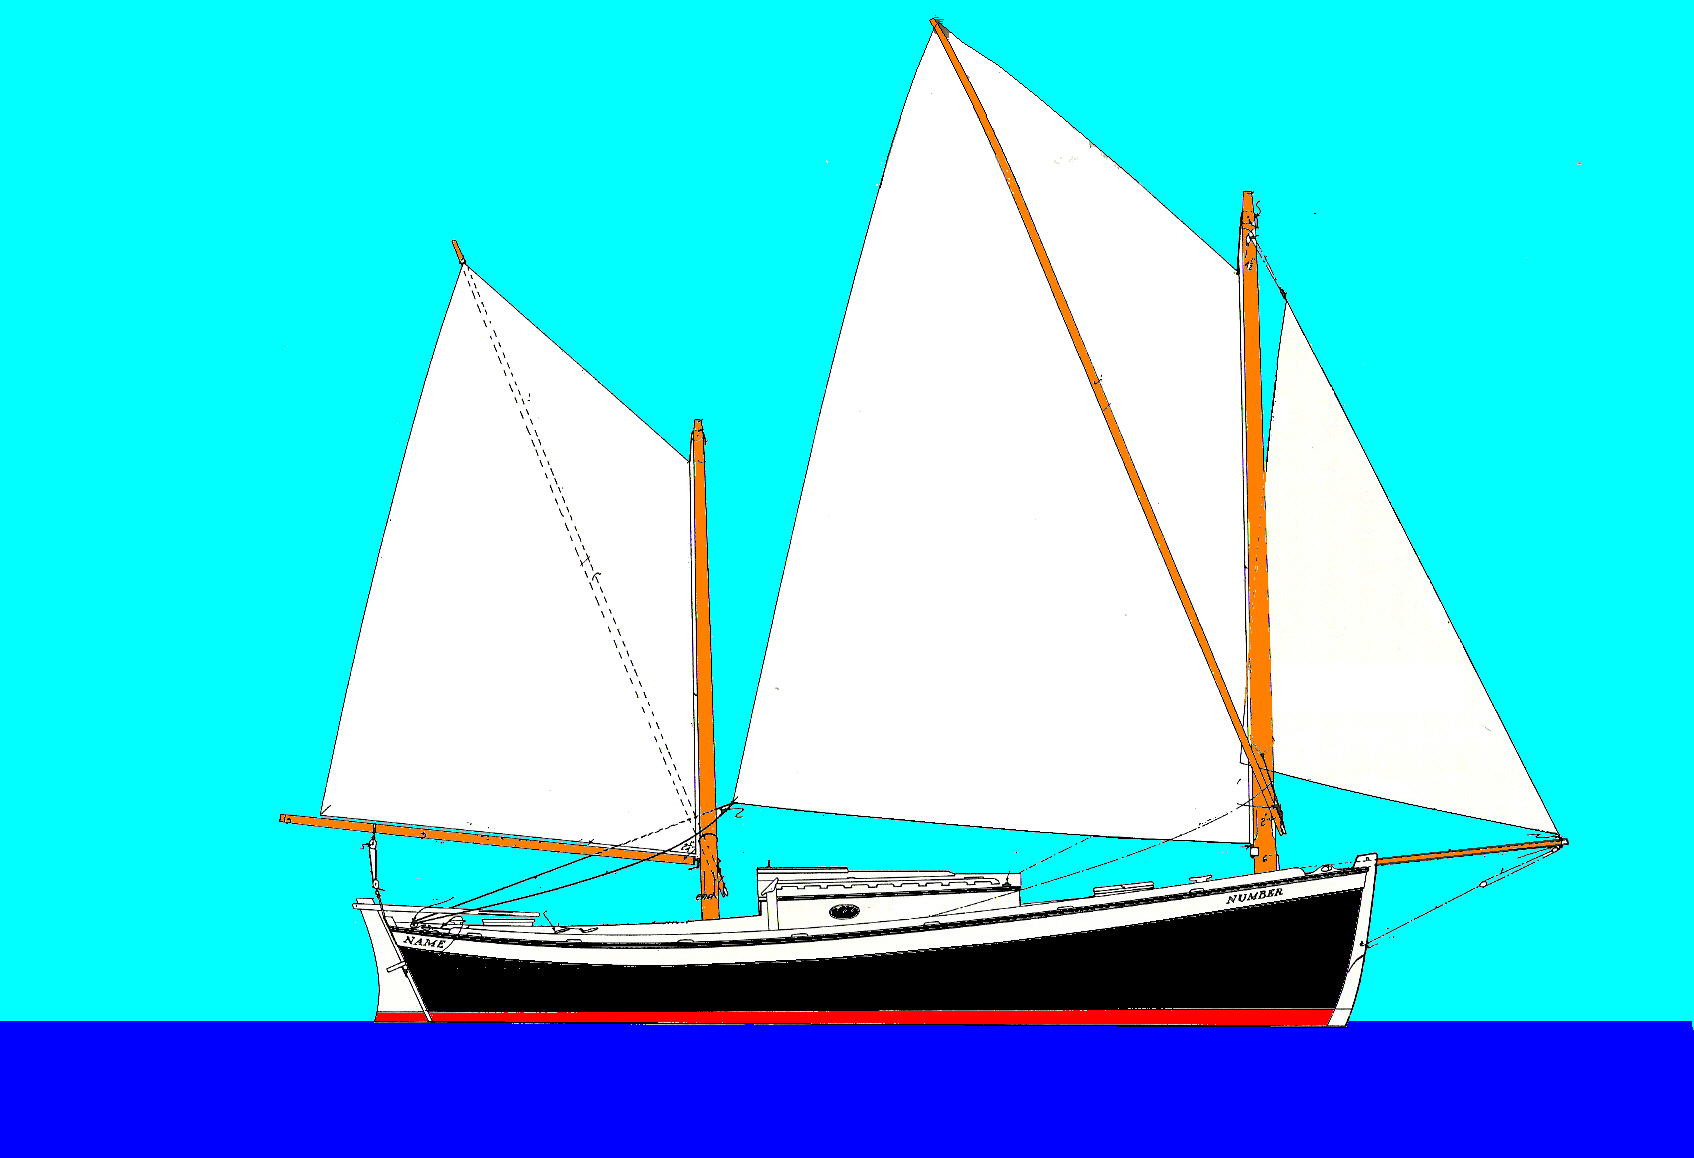 Hampden boat 24